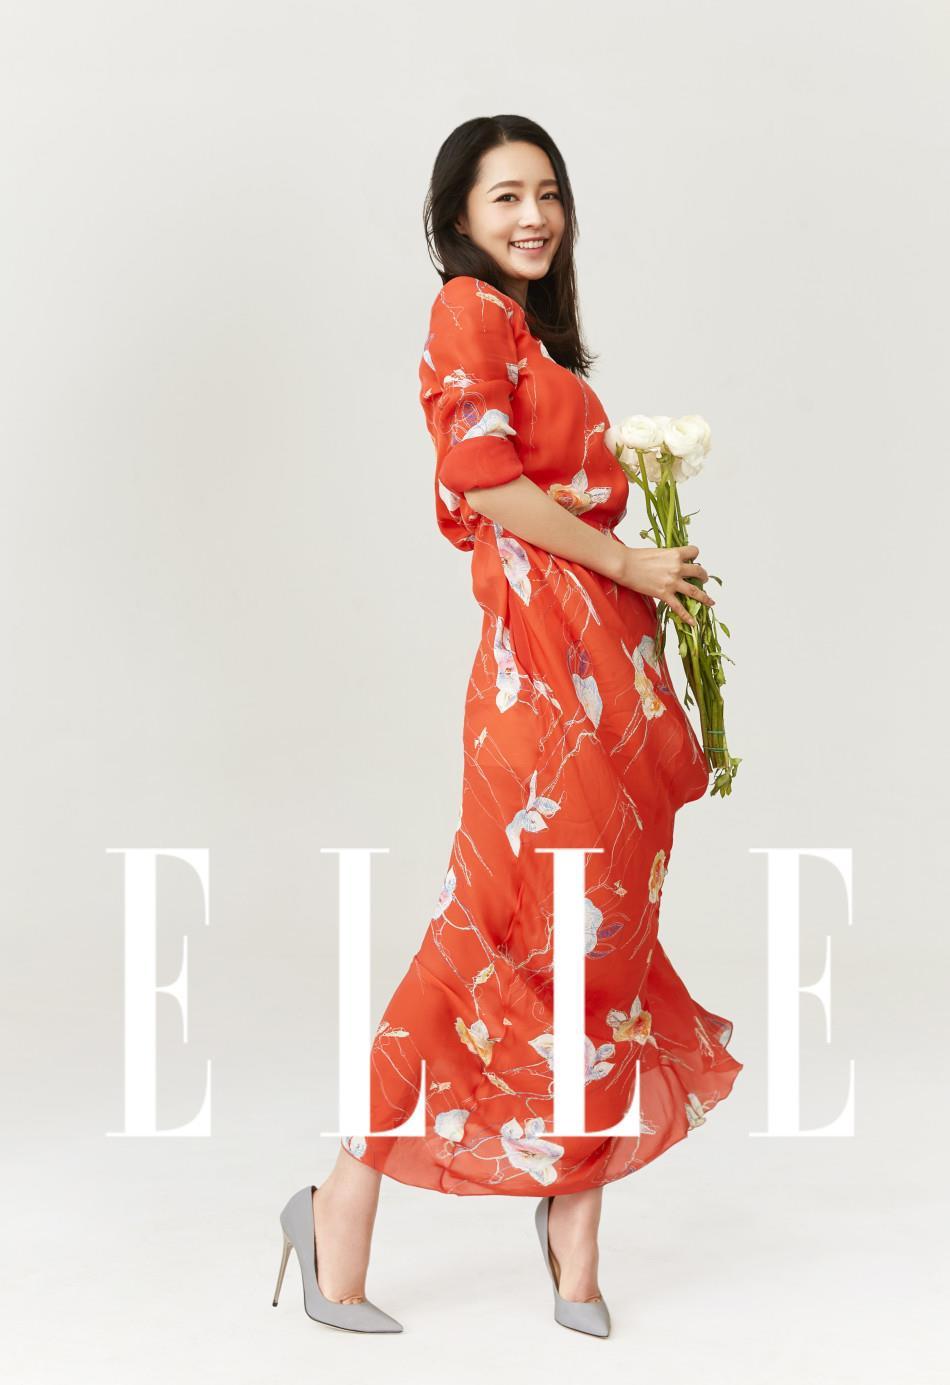 李沁最新时尚大片 御姐气场冷中带甜,李沁登《Elle》六月上内页